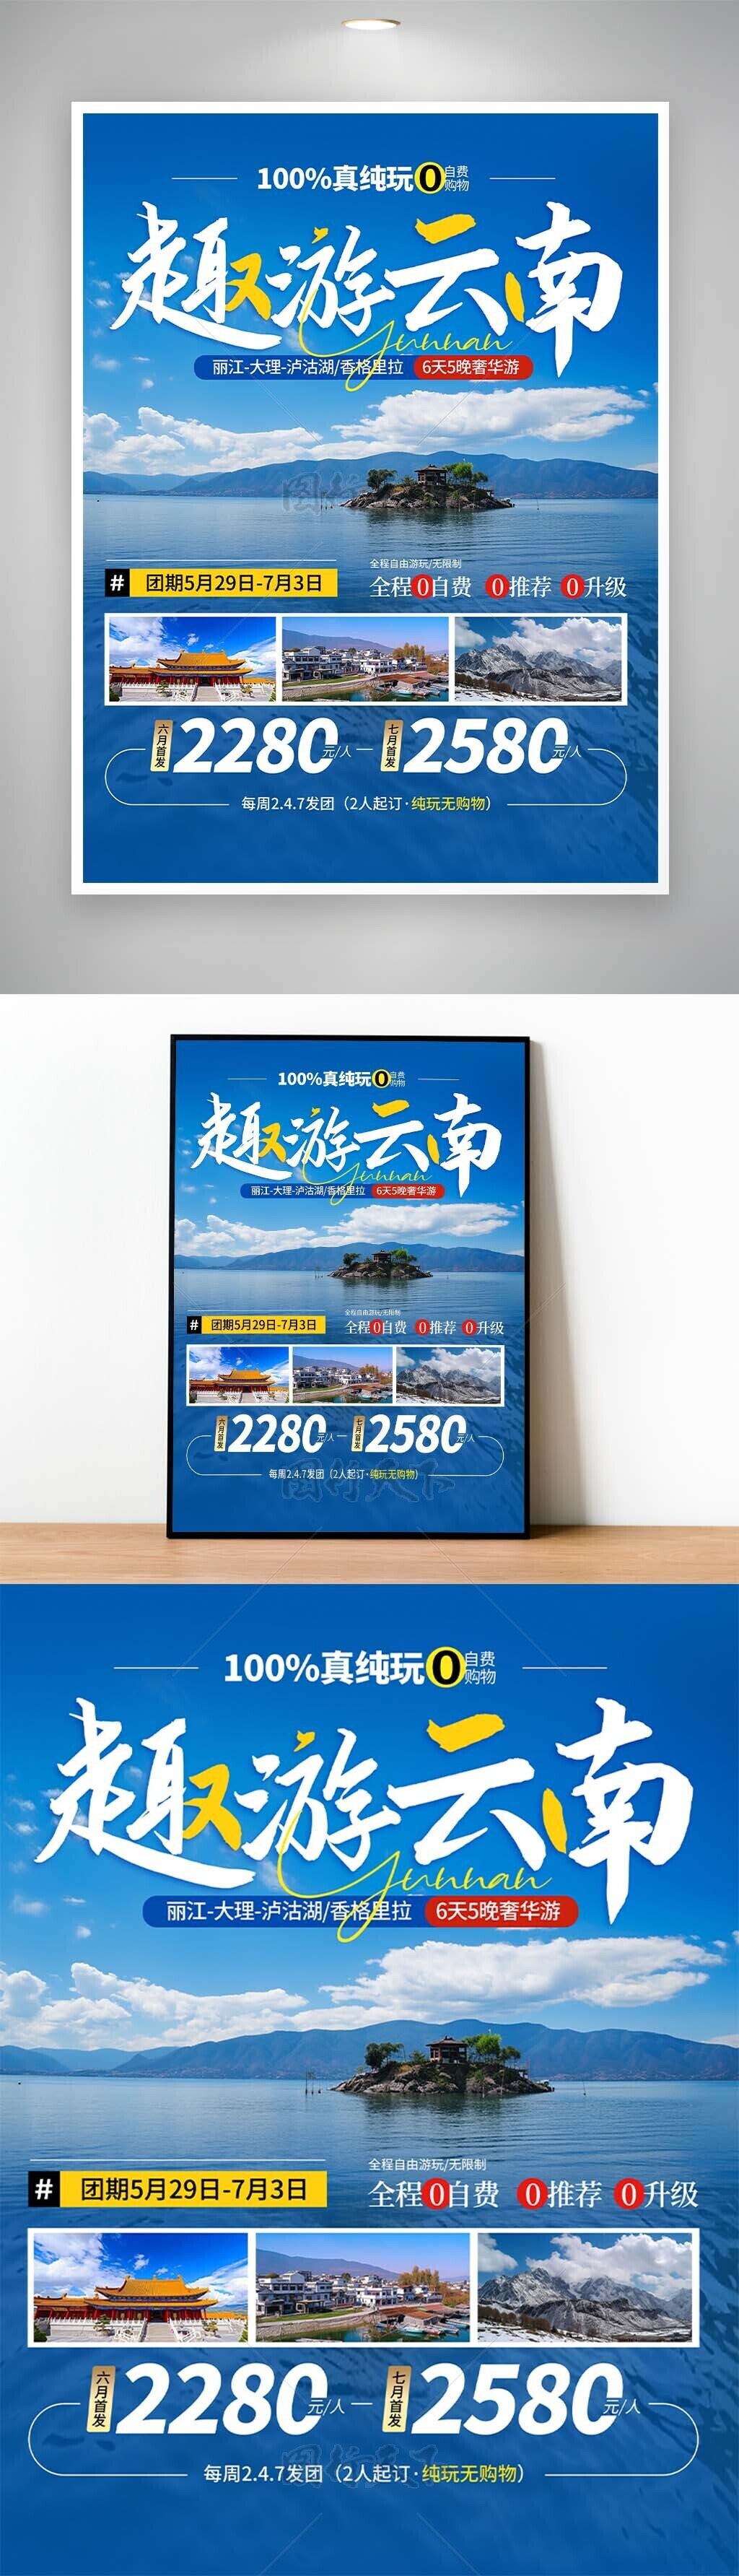 趣游云南美景湖泊创意文旅宣传海报